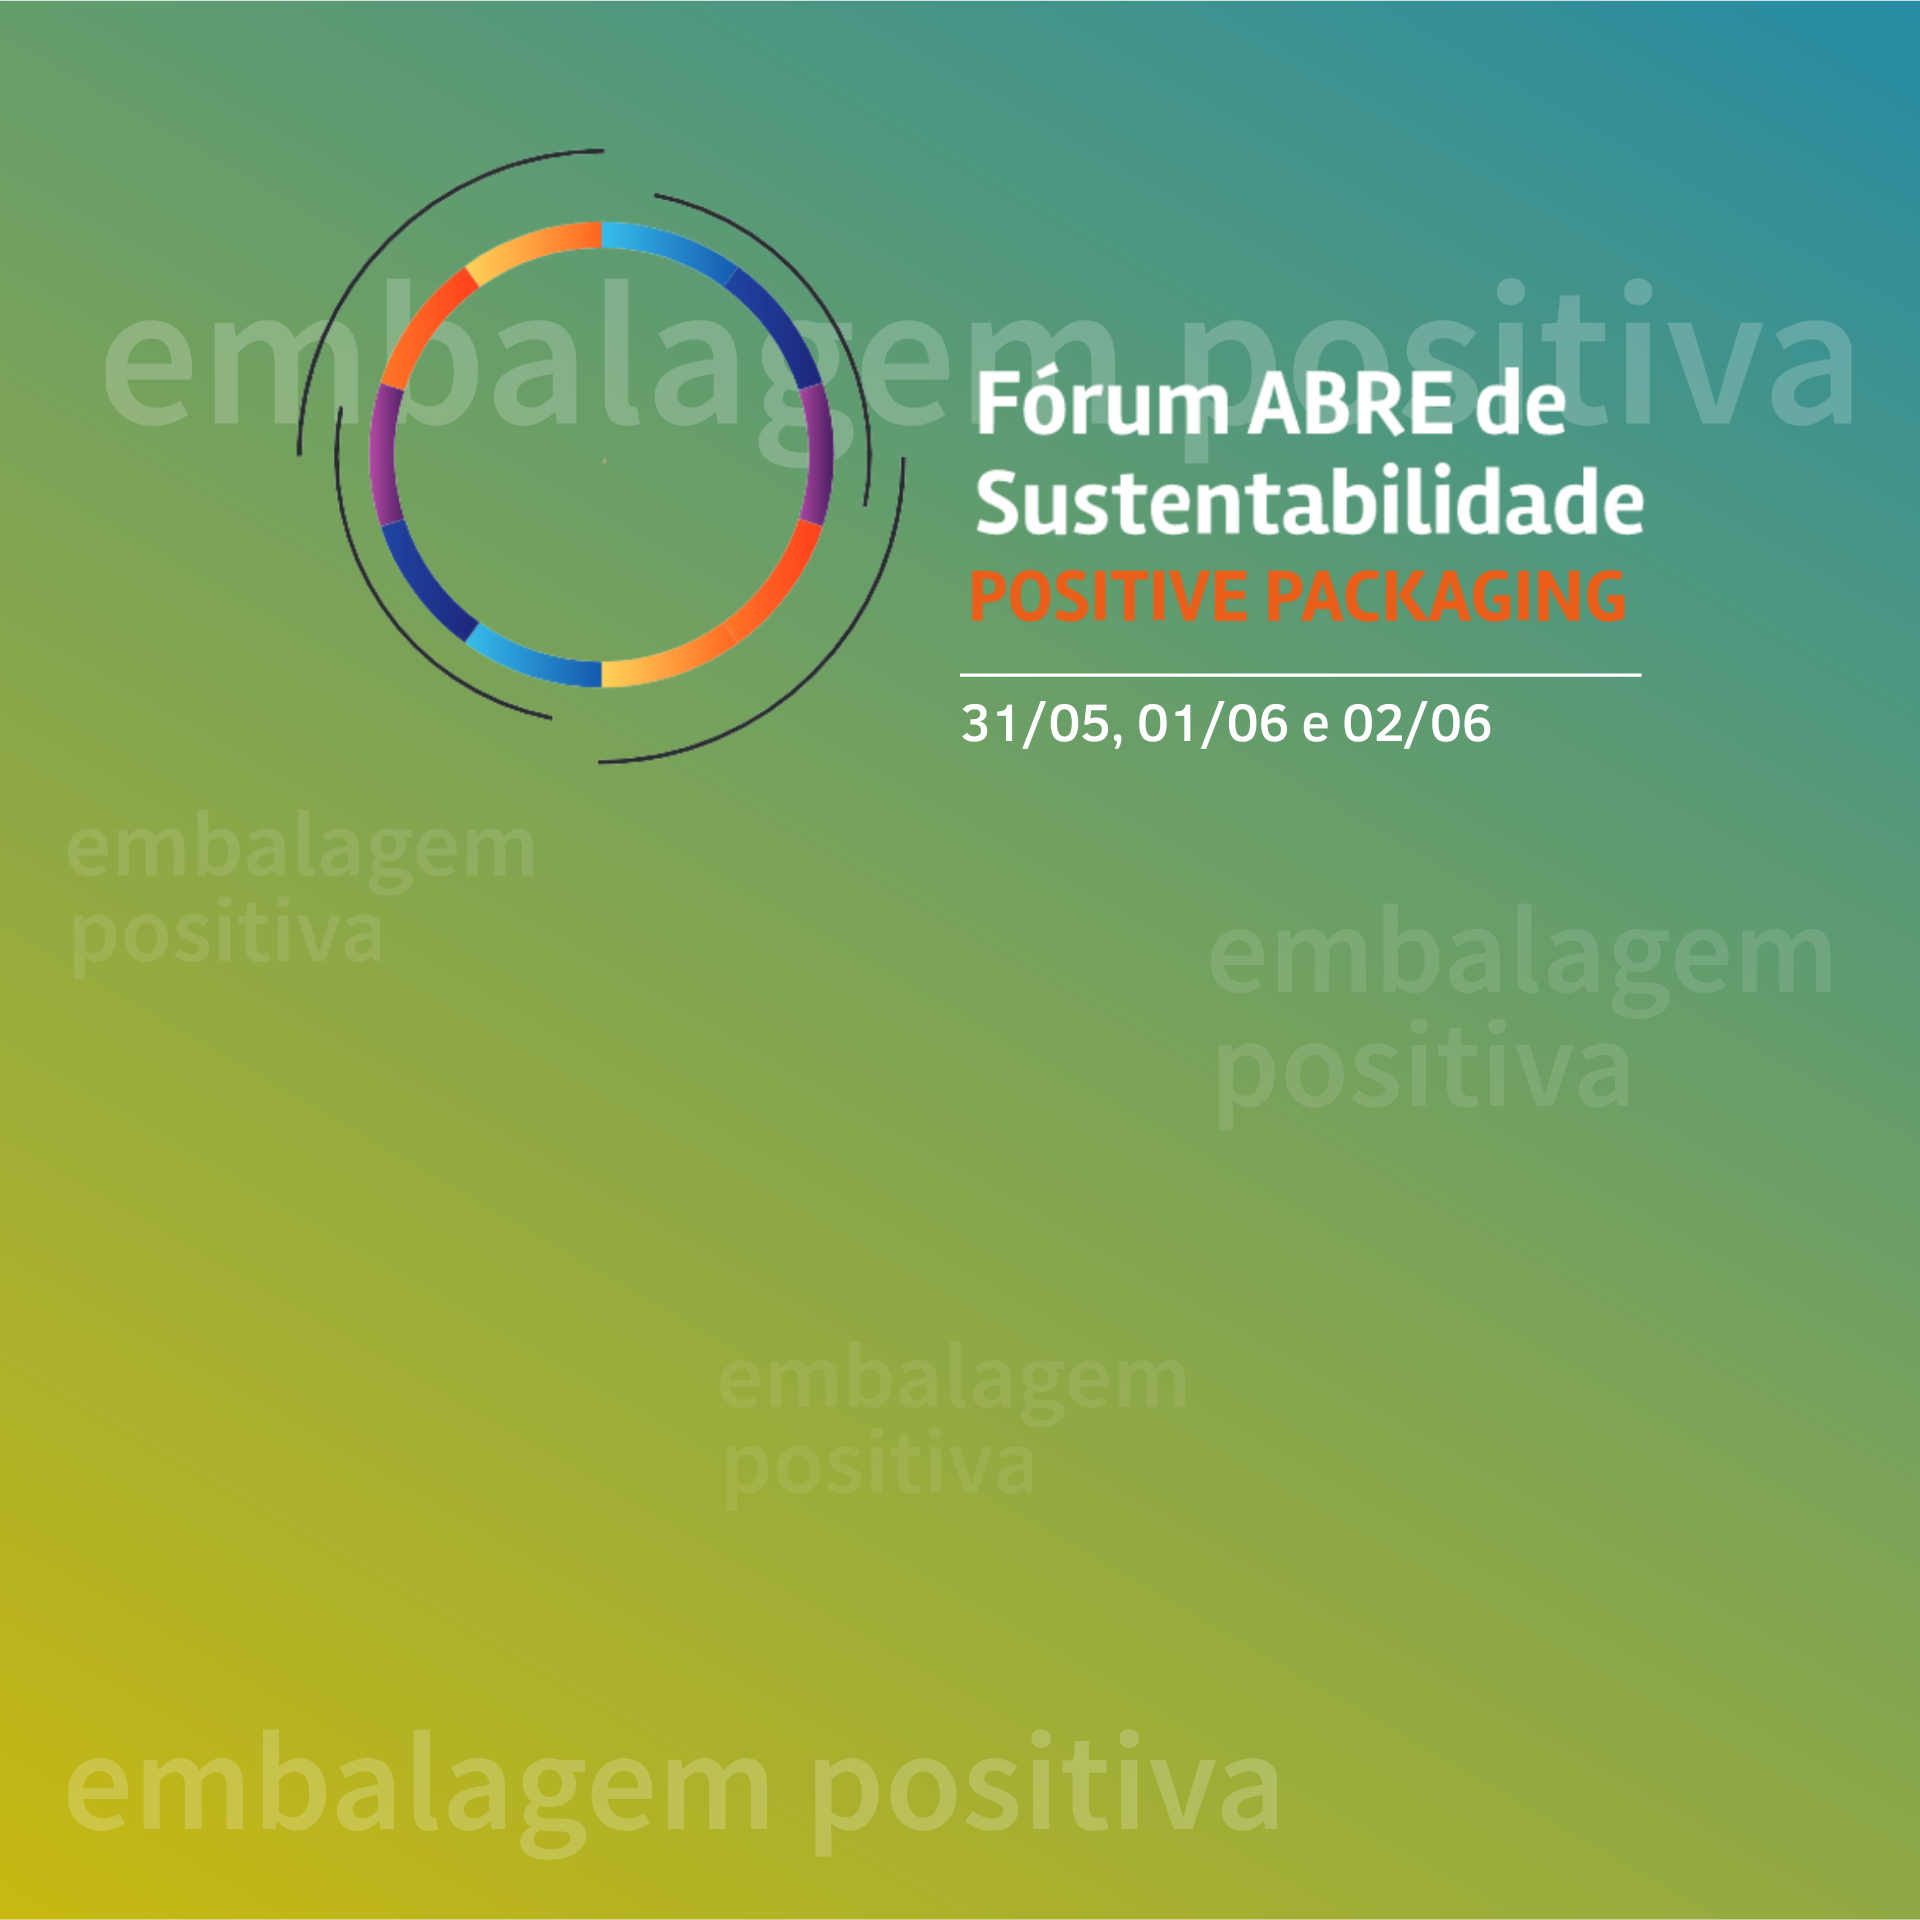 Fórum ABRE de Sustentabilidade: Positive Packaging